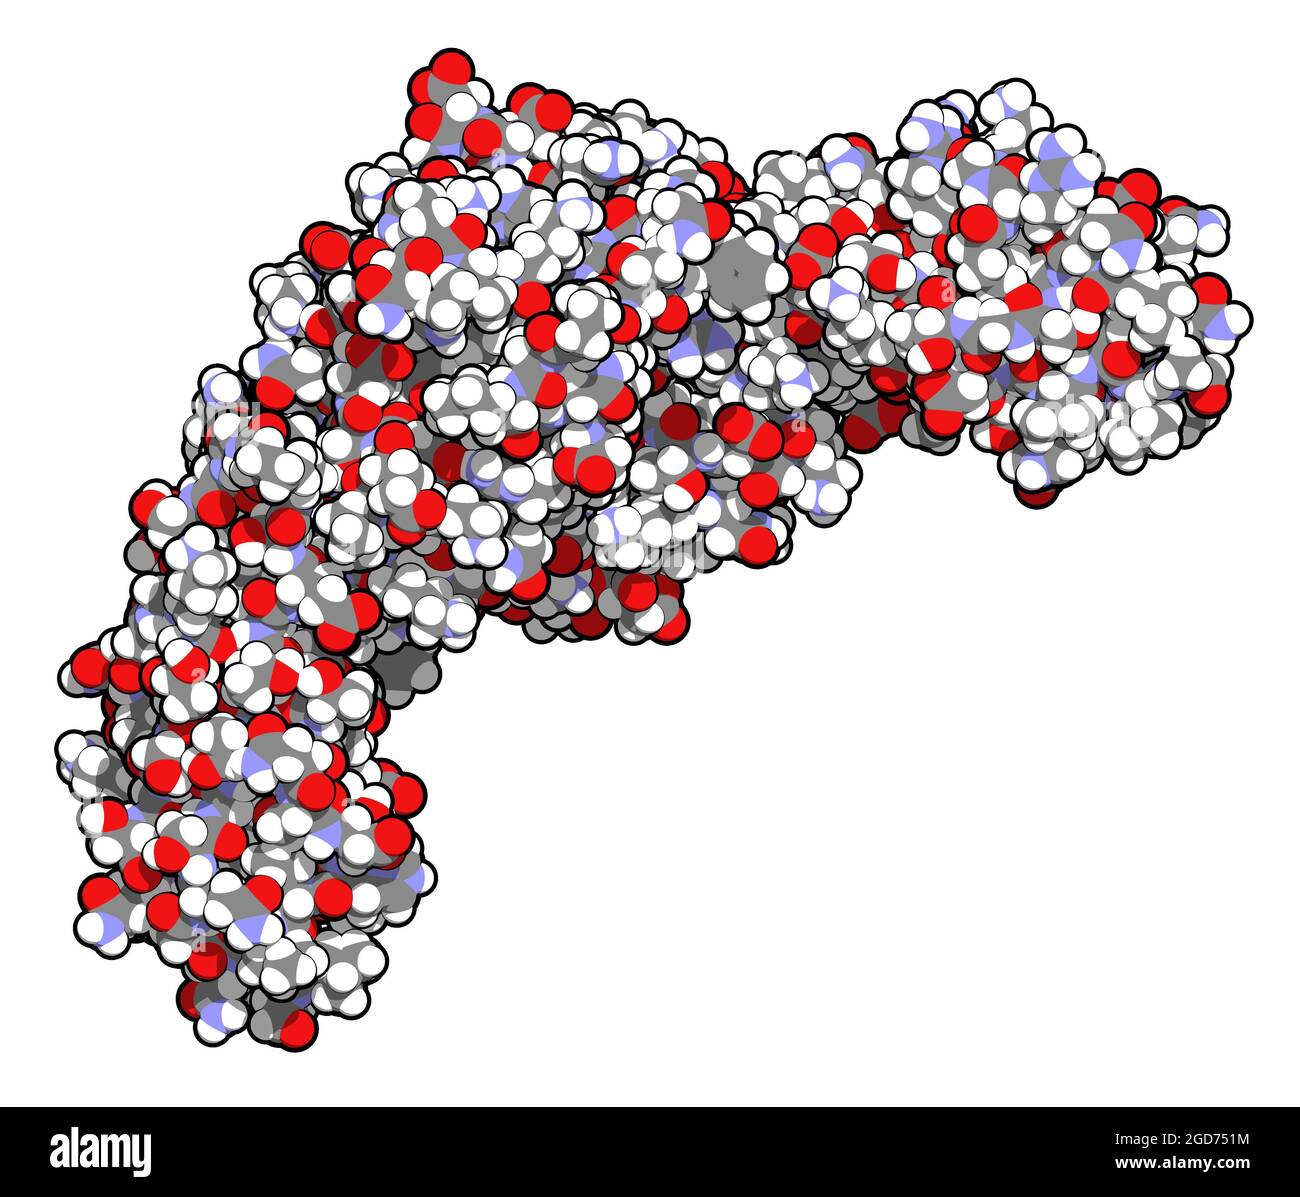 CD4-Oberflächenprotein. Glykoprotein, das auf einer Reihe von weißen b vorhanden ist Stockfoto